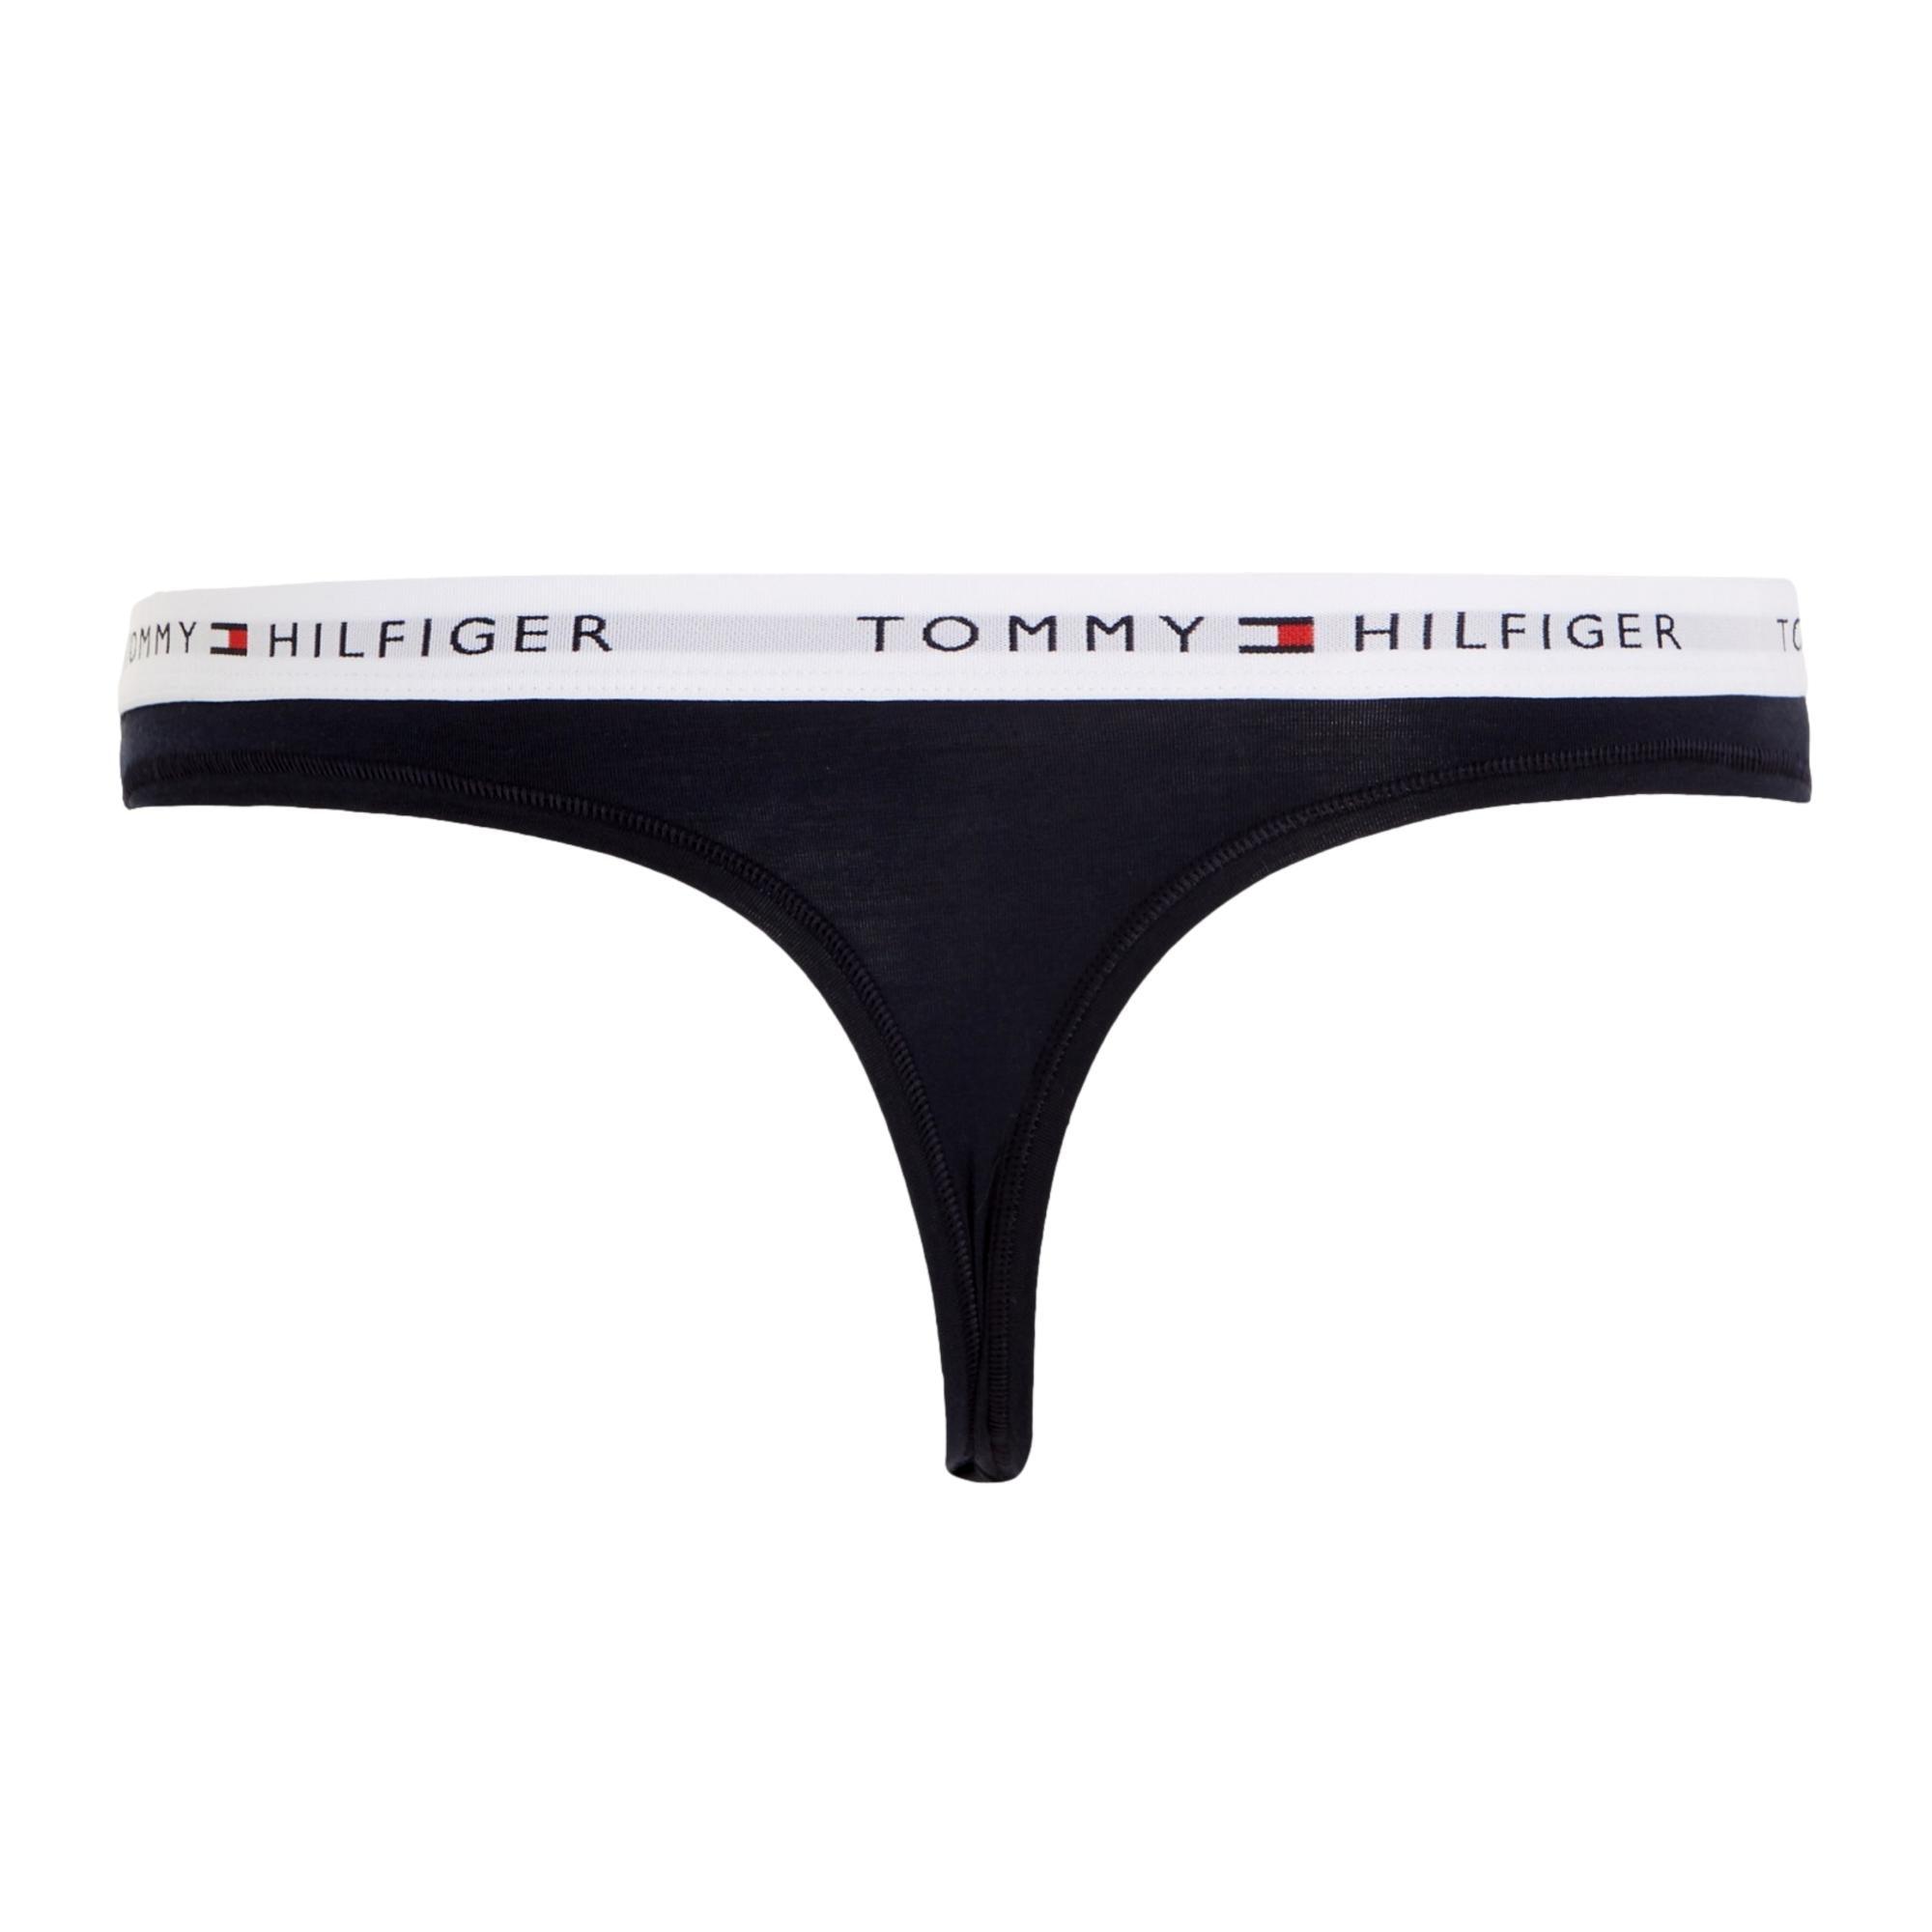 Utility Apparel Thong & Sky Desert - Bear Waistband Accessories - Tommy Hilfiger Logo